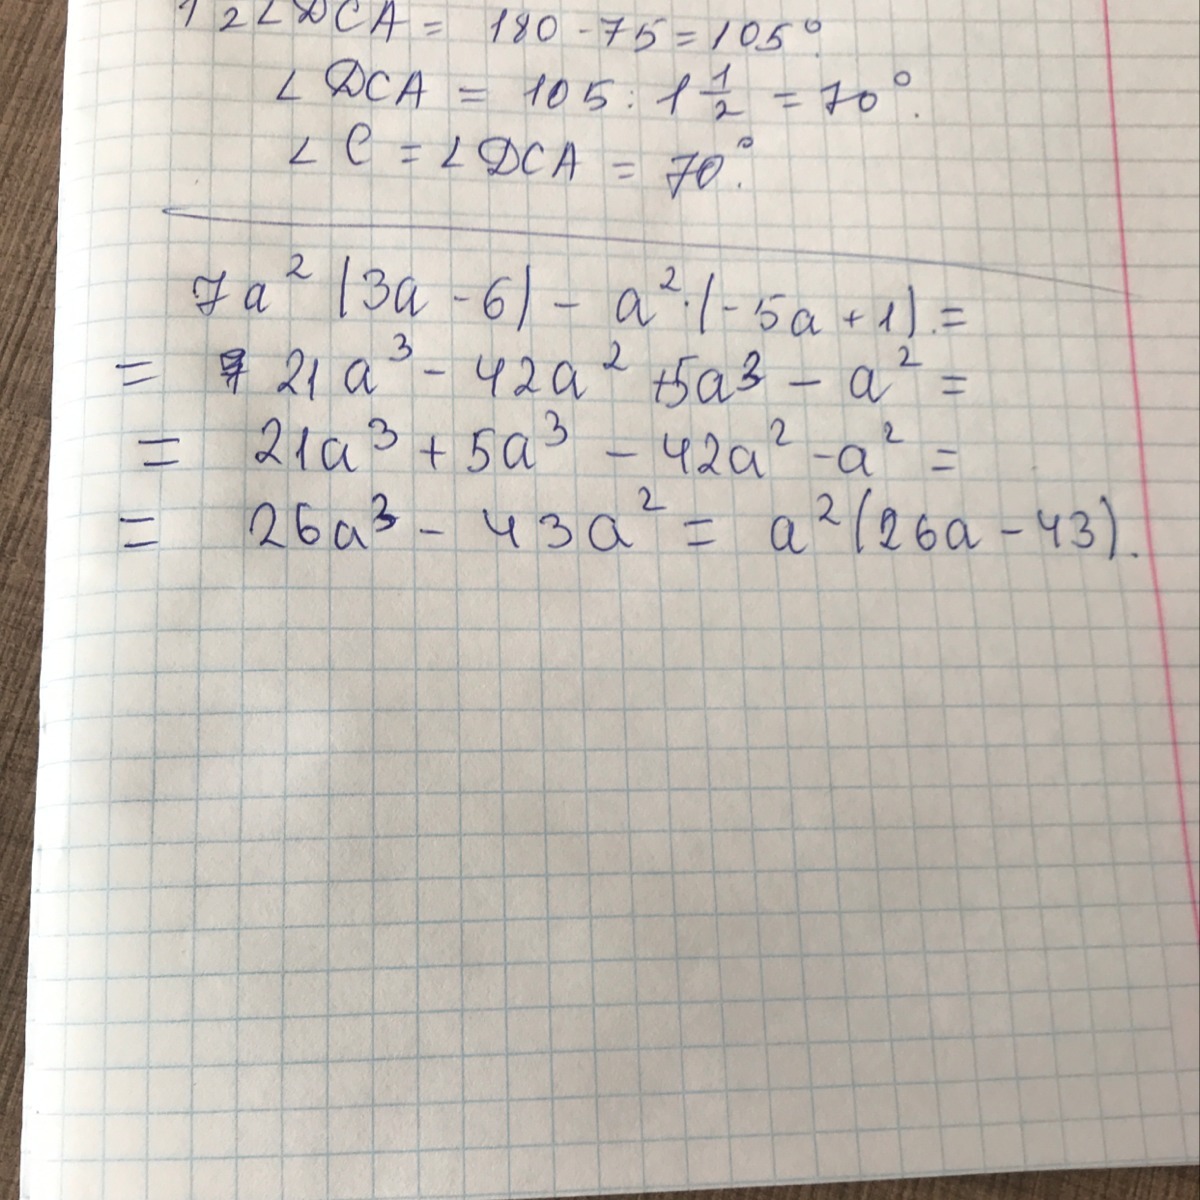 А2 3 11. 1,5*6,2. 7 1/2+3. (5a-3b)^2-(3a-5b)^2. 2(A-5)-7(7-2a) ответ.